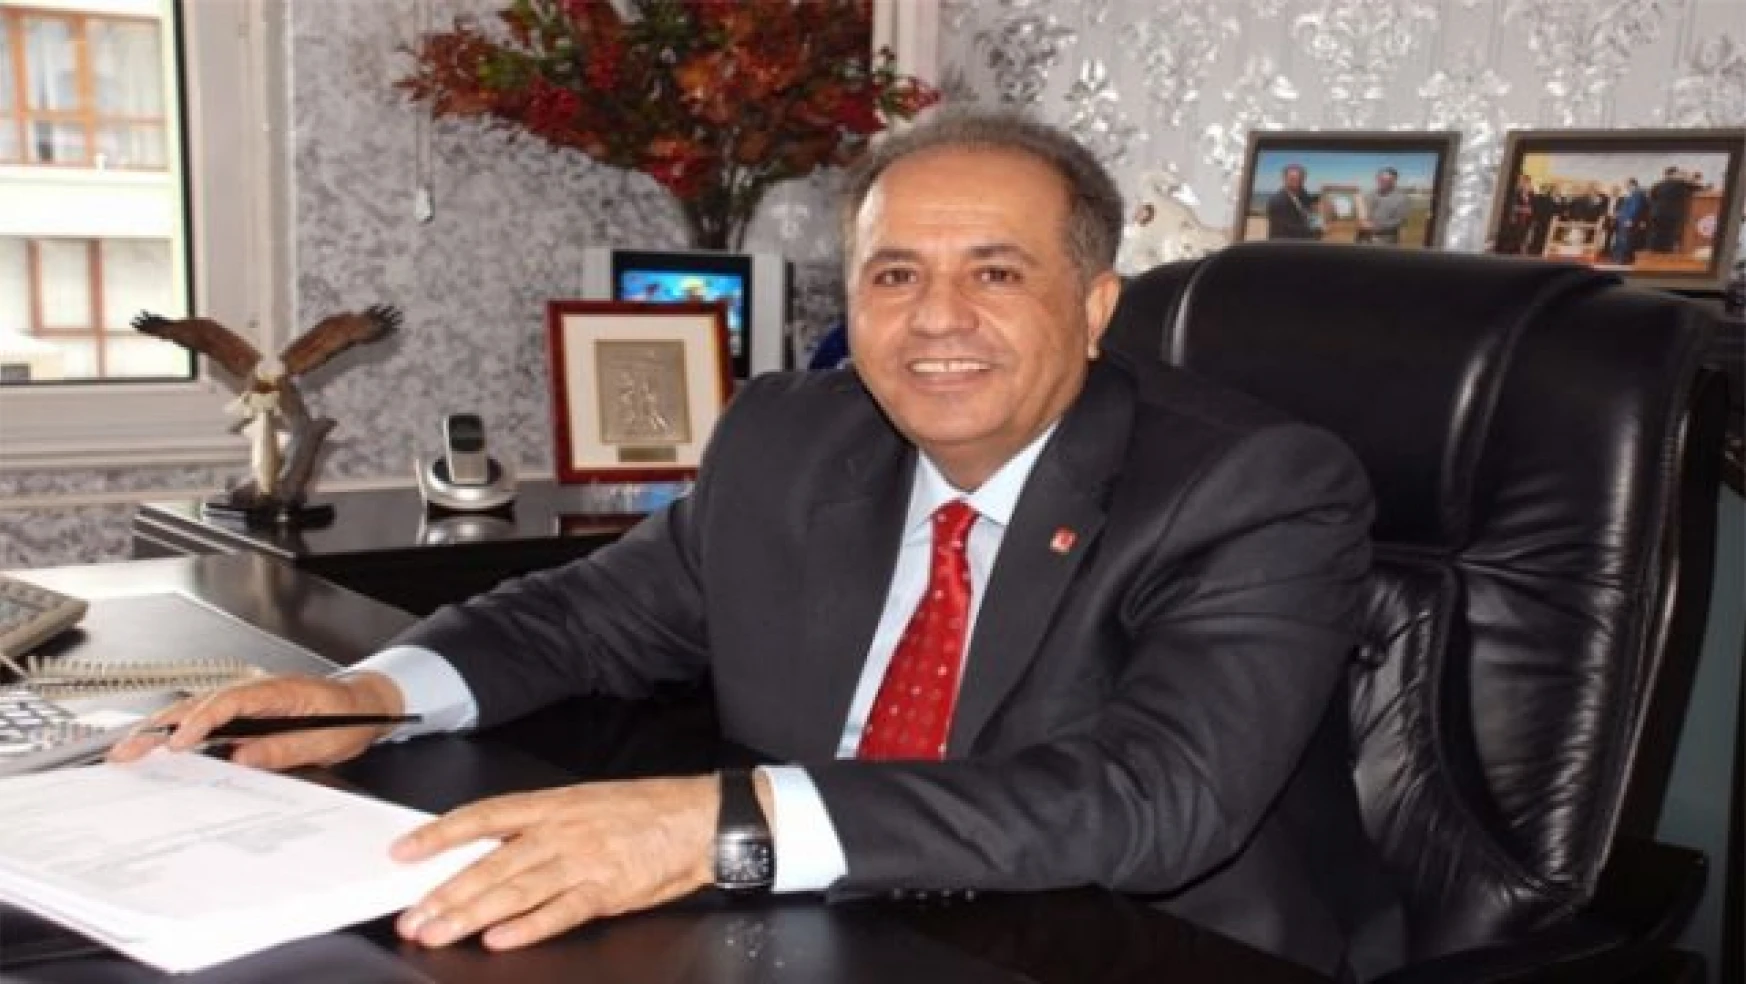 Kandaşoğlu: Van Emniyet Müdürlüğü binasını rekor sürede bitirdik